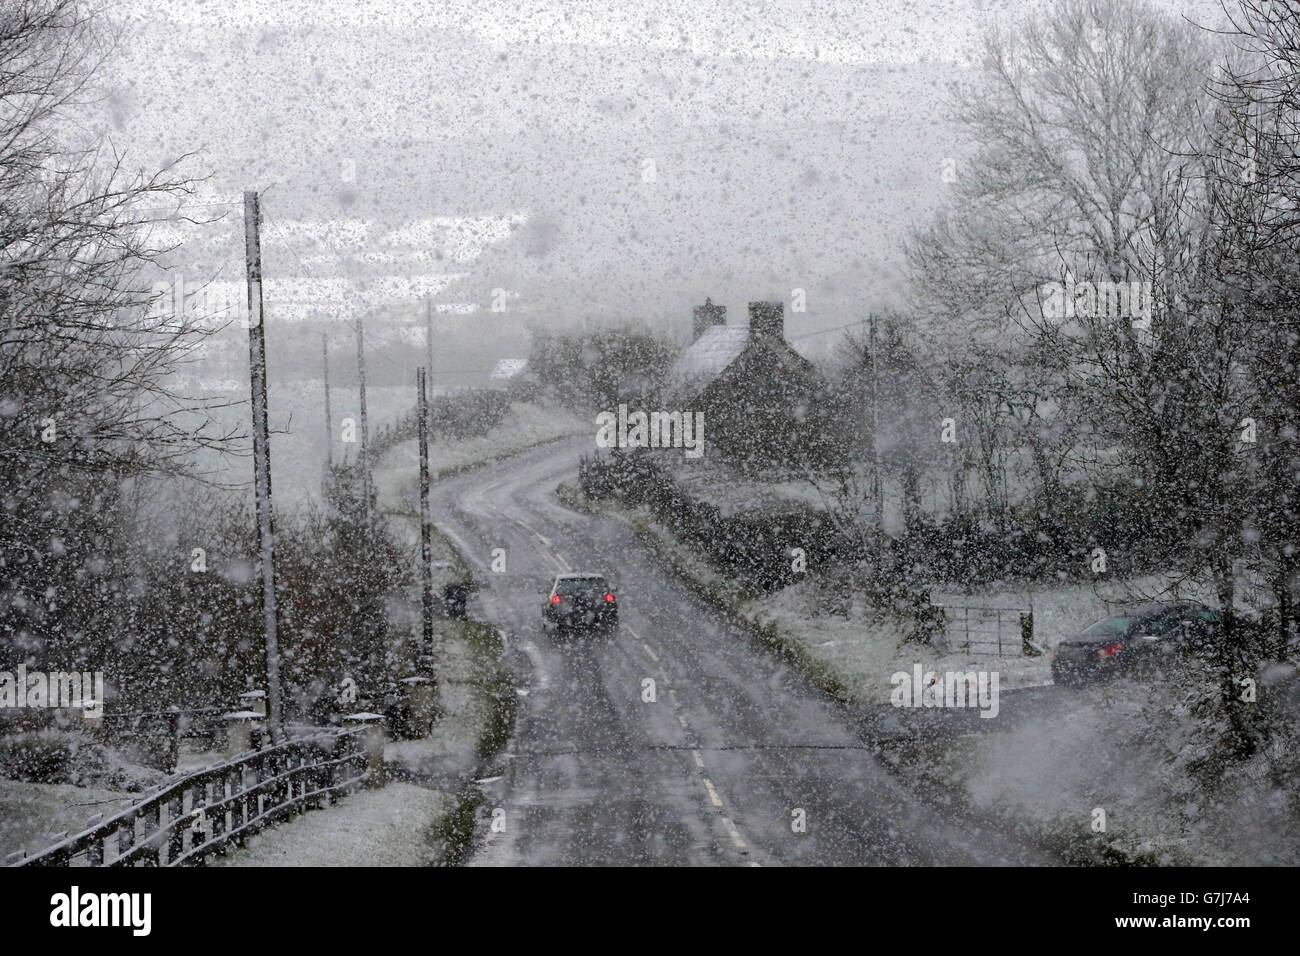 Les automobilistes traversent les chutes de neige à Gortin près d'Omagh, car de nombreuses régions du Royaume-Uni étaient en alerte de neige et des averses de pluie menaçaient de perturber leurs déplacements. Banque D'Images